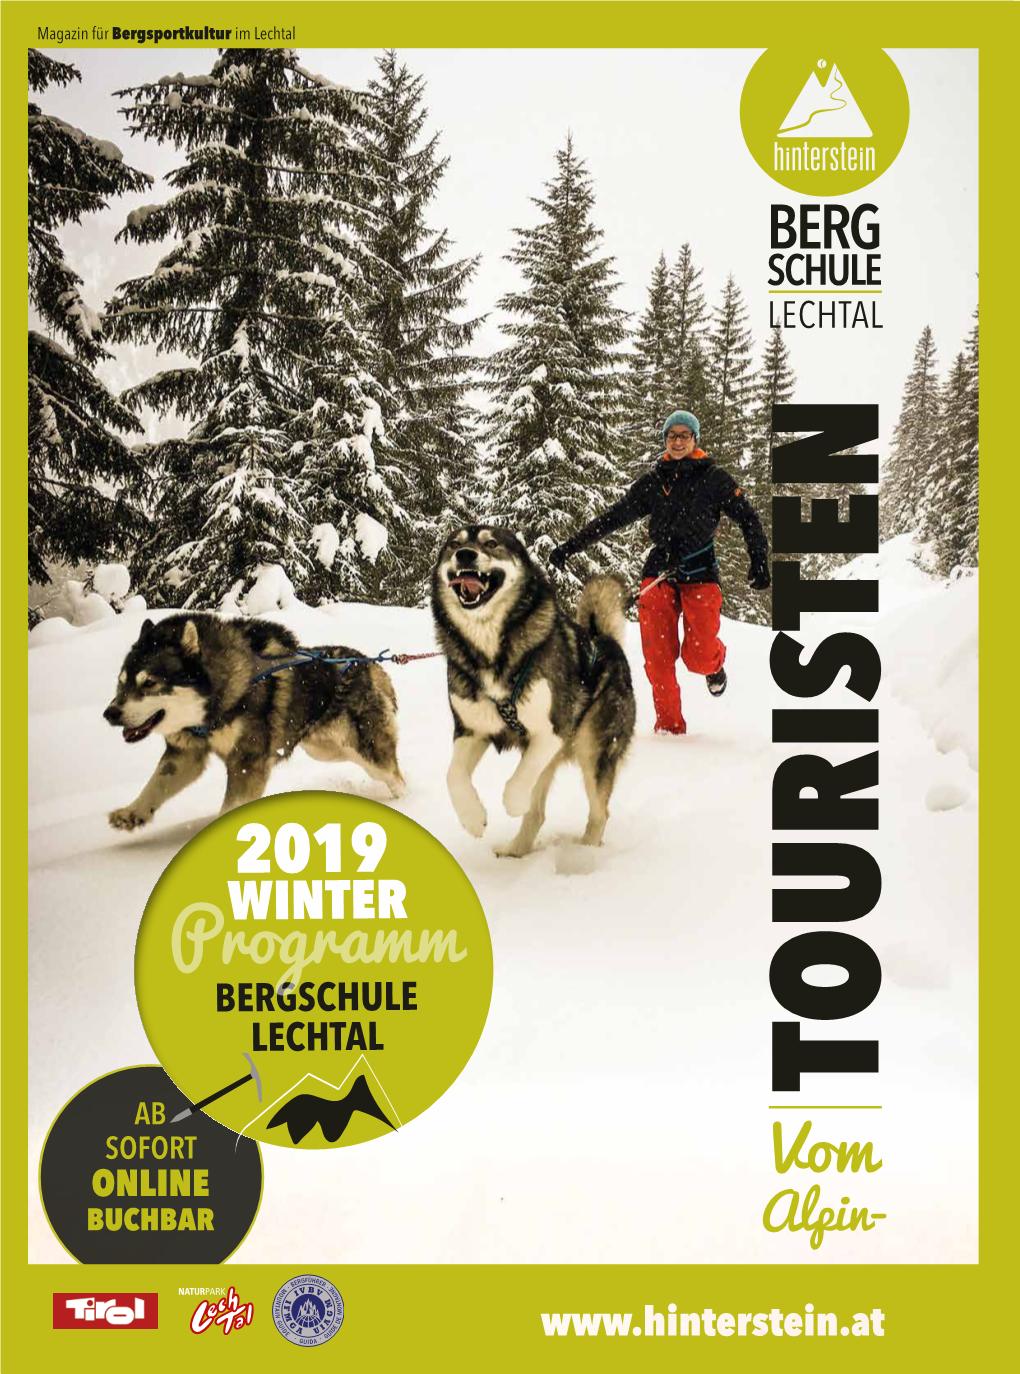 Programm BERGSCHULE LECHTAL TOURISTEN AB SOFORT ONLINE Vom BUCHBAR Alpin- WILLKOMMEN INHALTE Winter 2019 Bei Den Hintersteinern